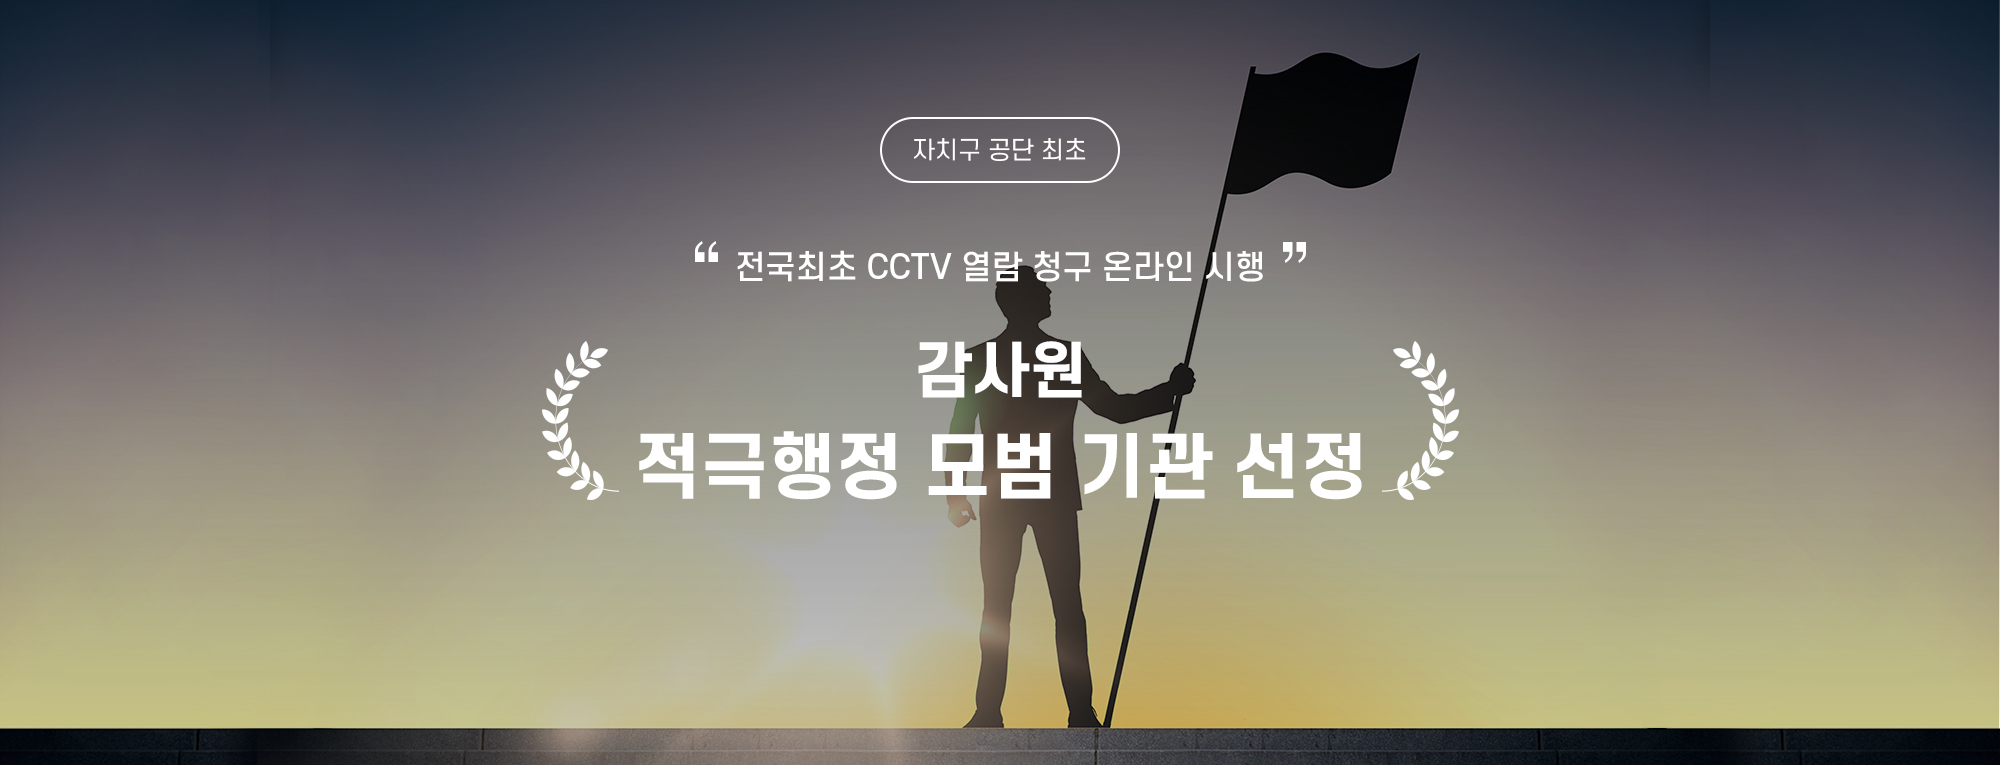 전국 최초로 CCTV 열람 청구 온라인 시행을 통한
2023년도 감사원 적극행정 모범 기관 선정(자치구 공단 최초)